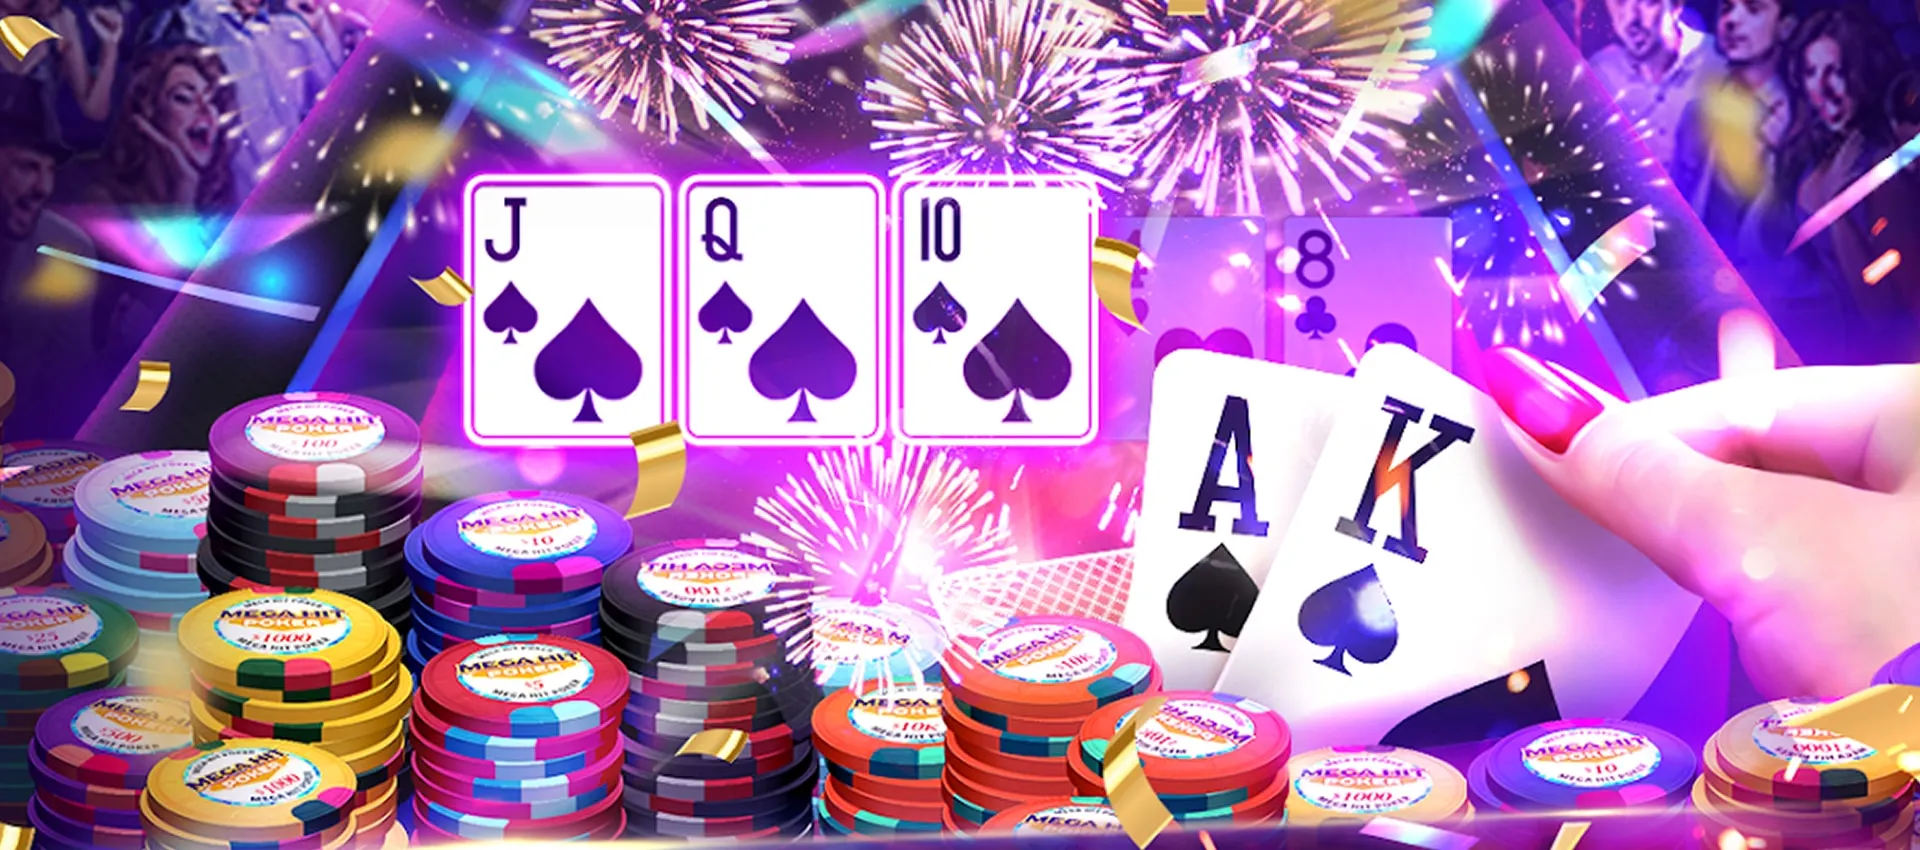 Lista: 5 melhores jogos de poker para celular - Vida Celular